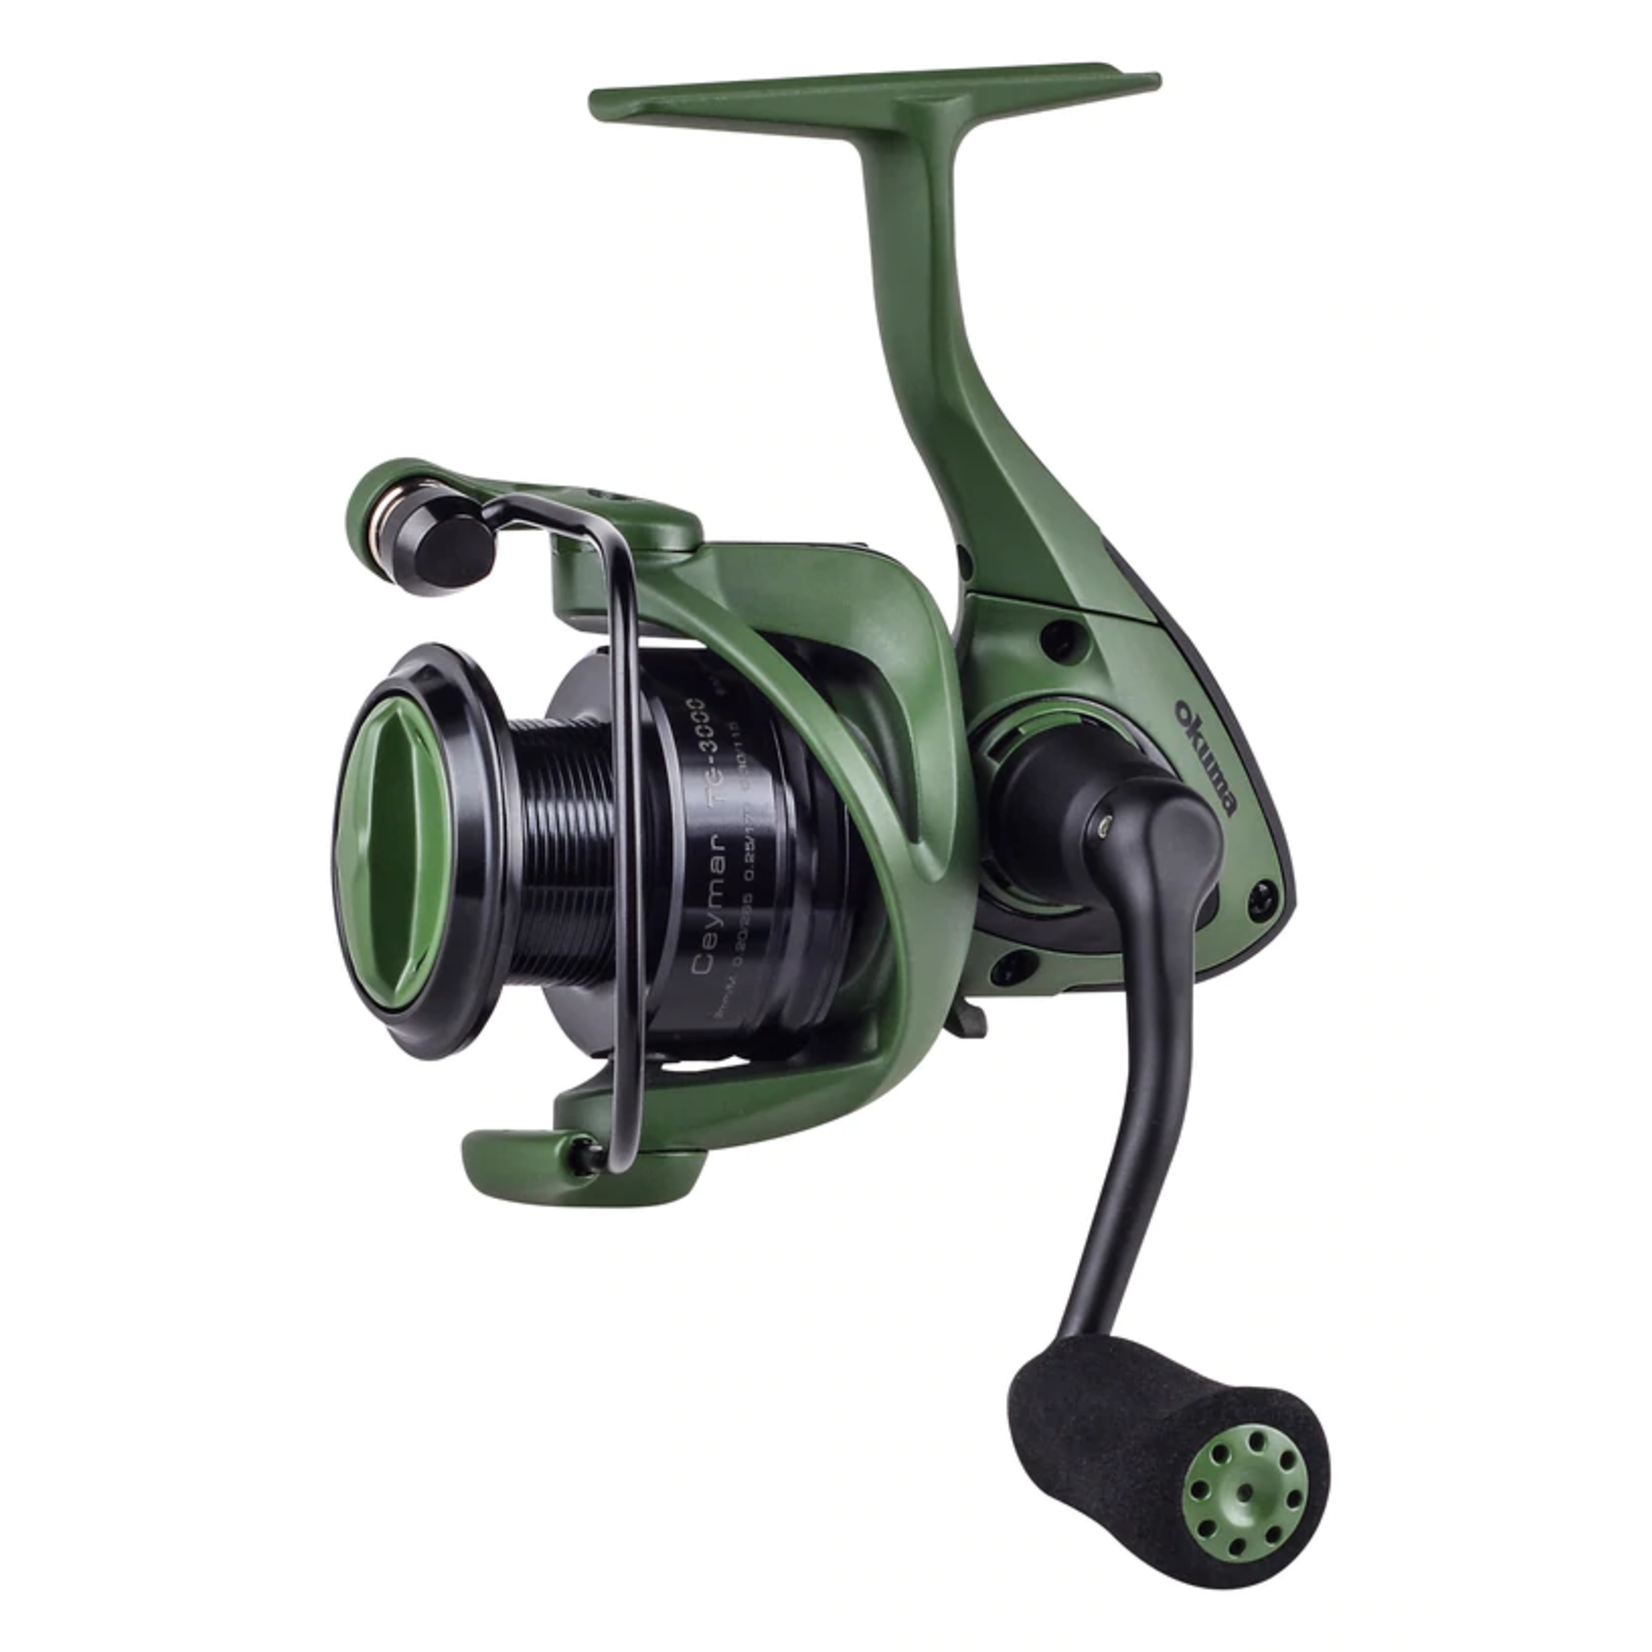 Okuma Fishing Tackle Ceymar Spinning 7Bb + 1Rb, 5.0:1 Ratio - Tactical Green